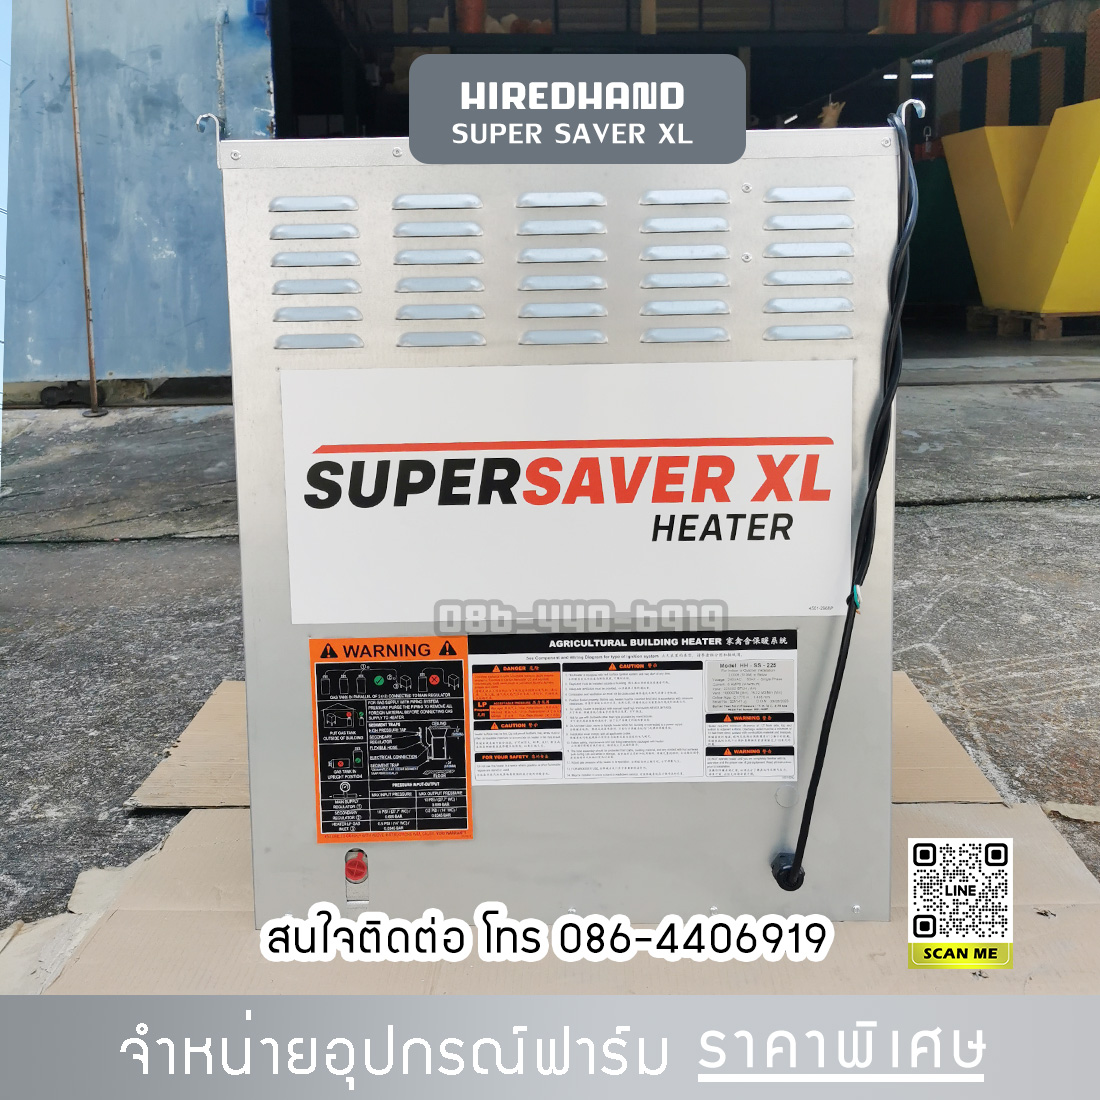 hiredhand super saver xl  heater ไฮแฮน